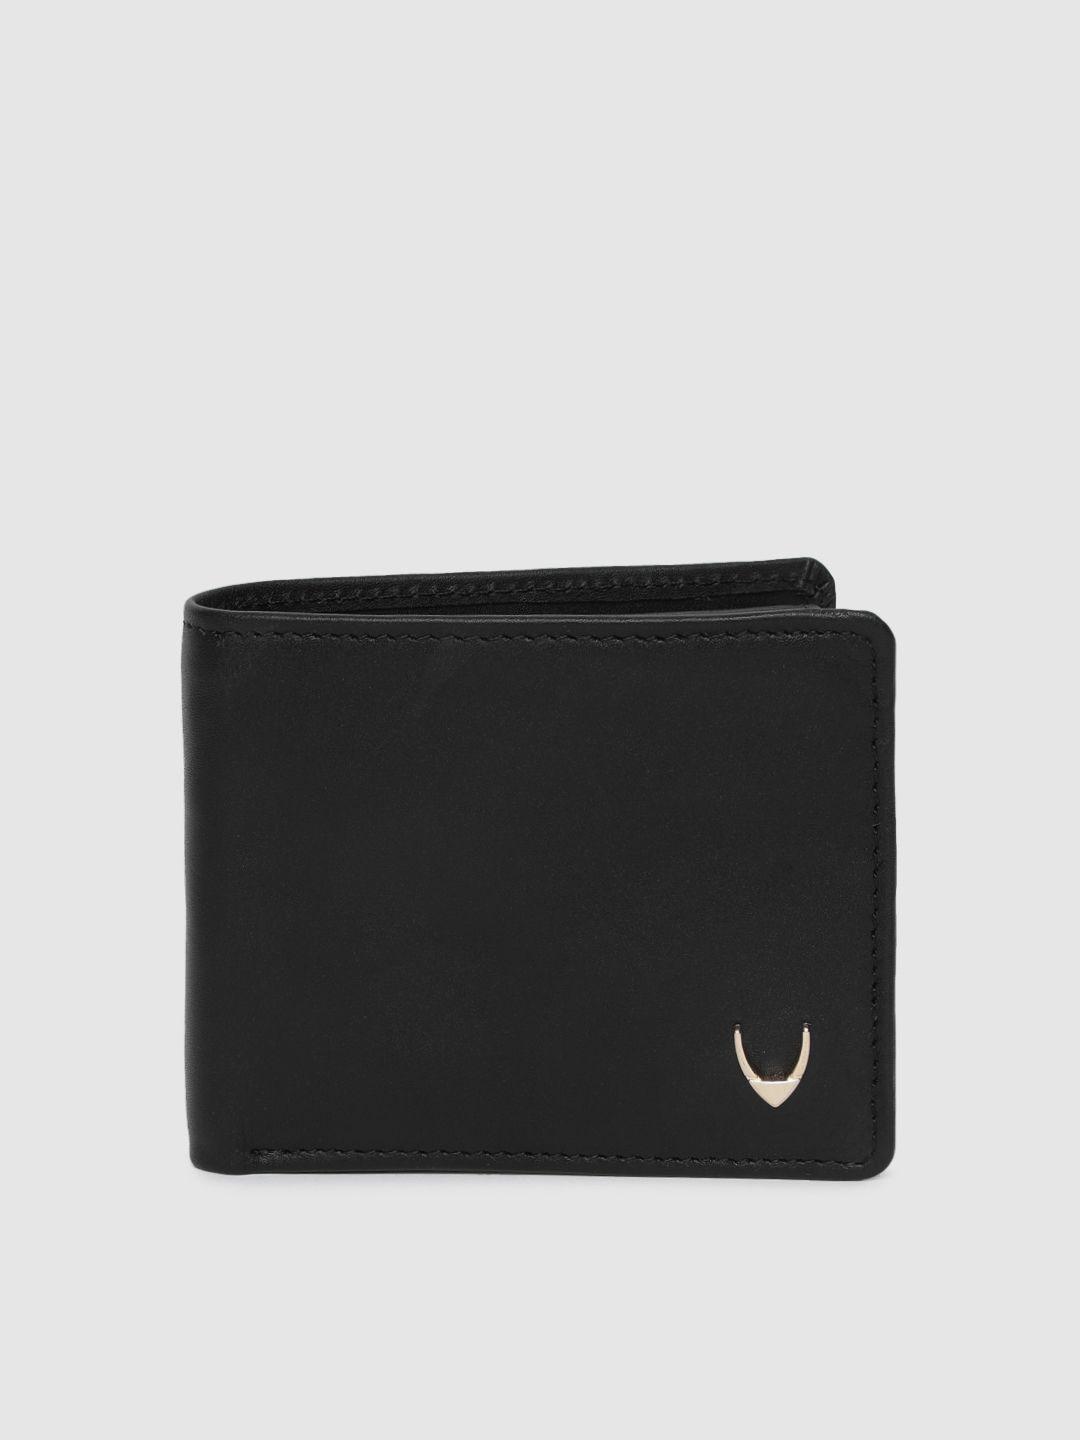 hidesign men black solid two fold wallet